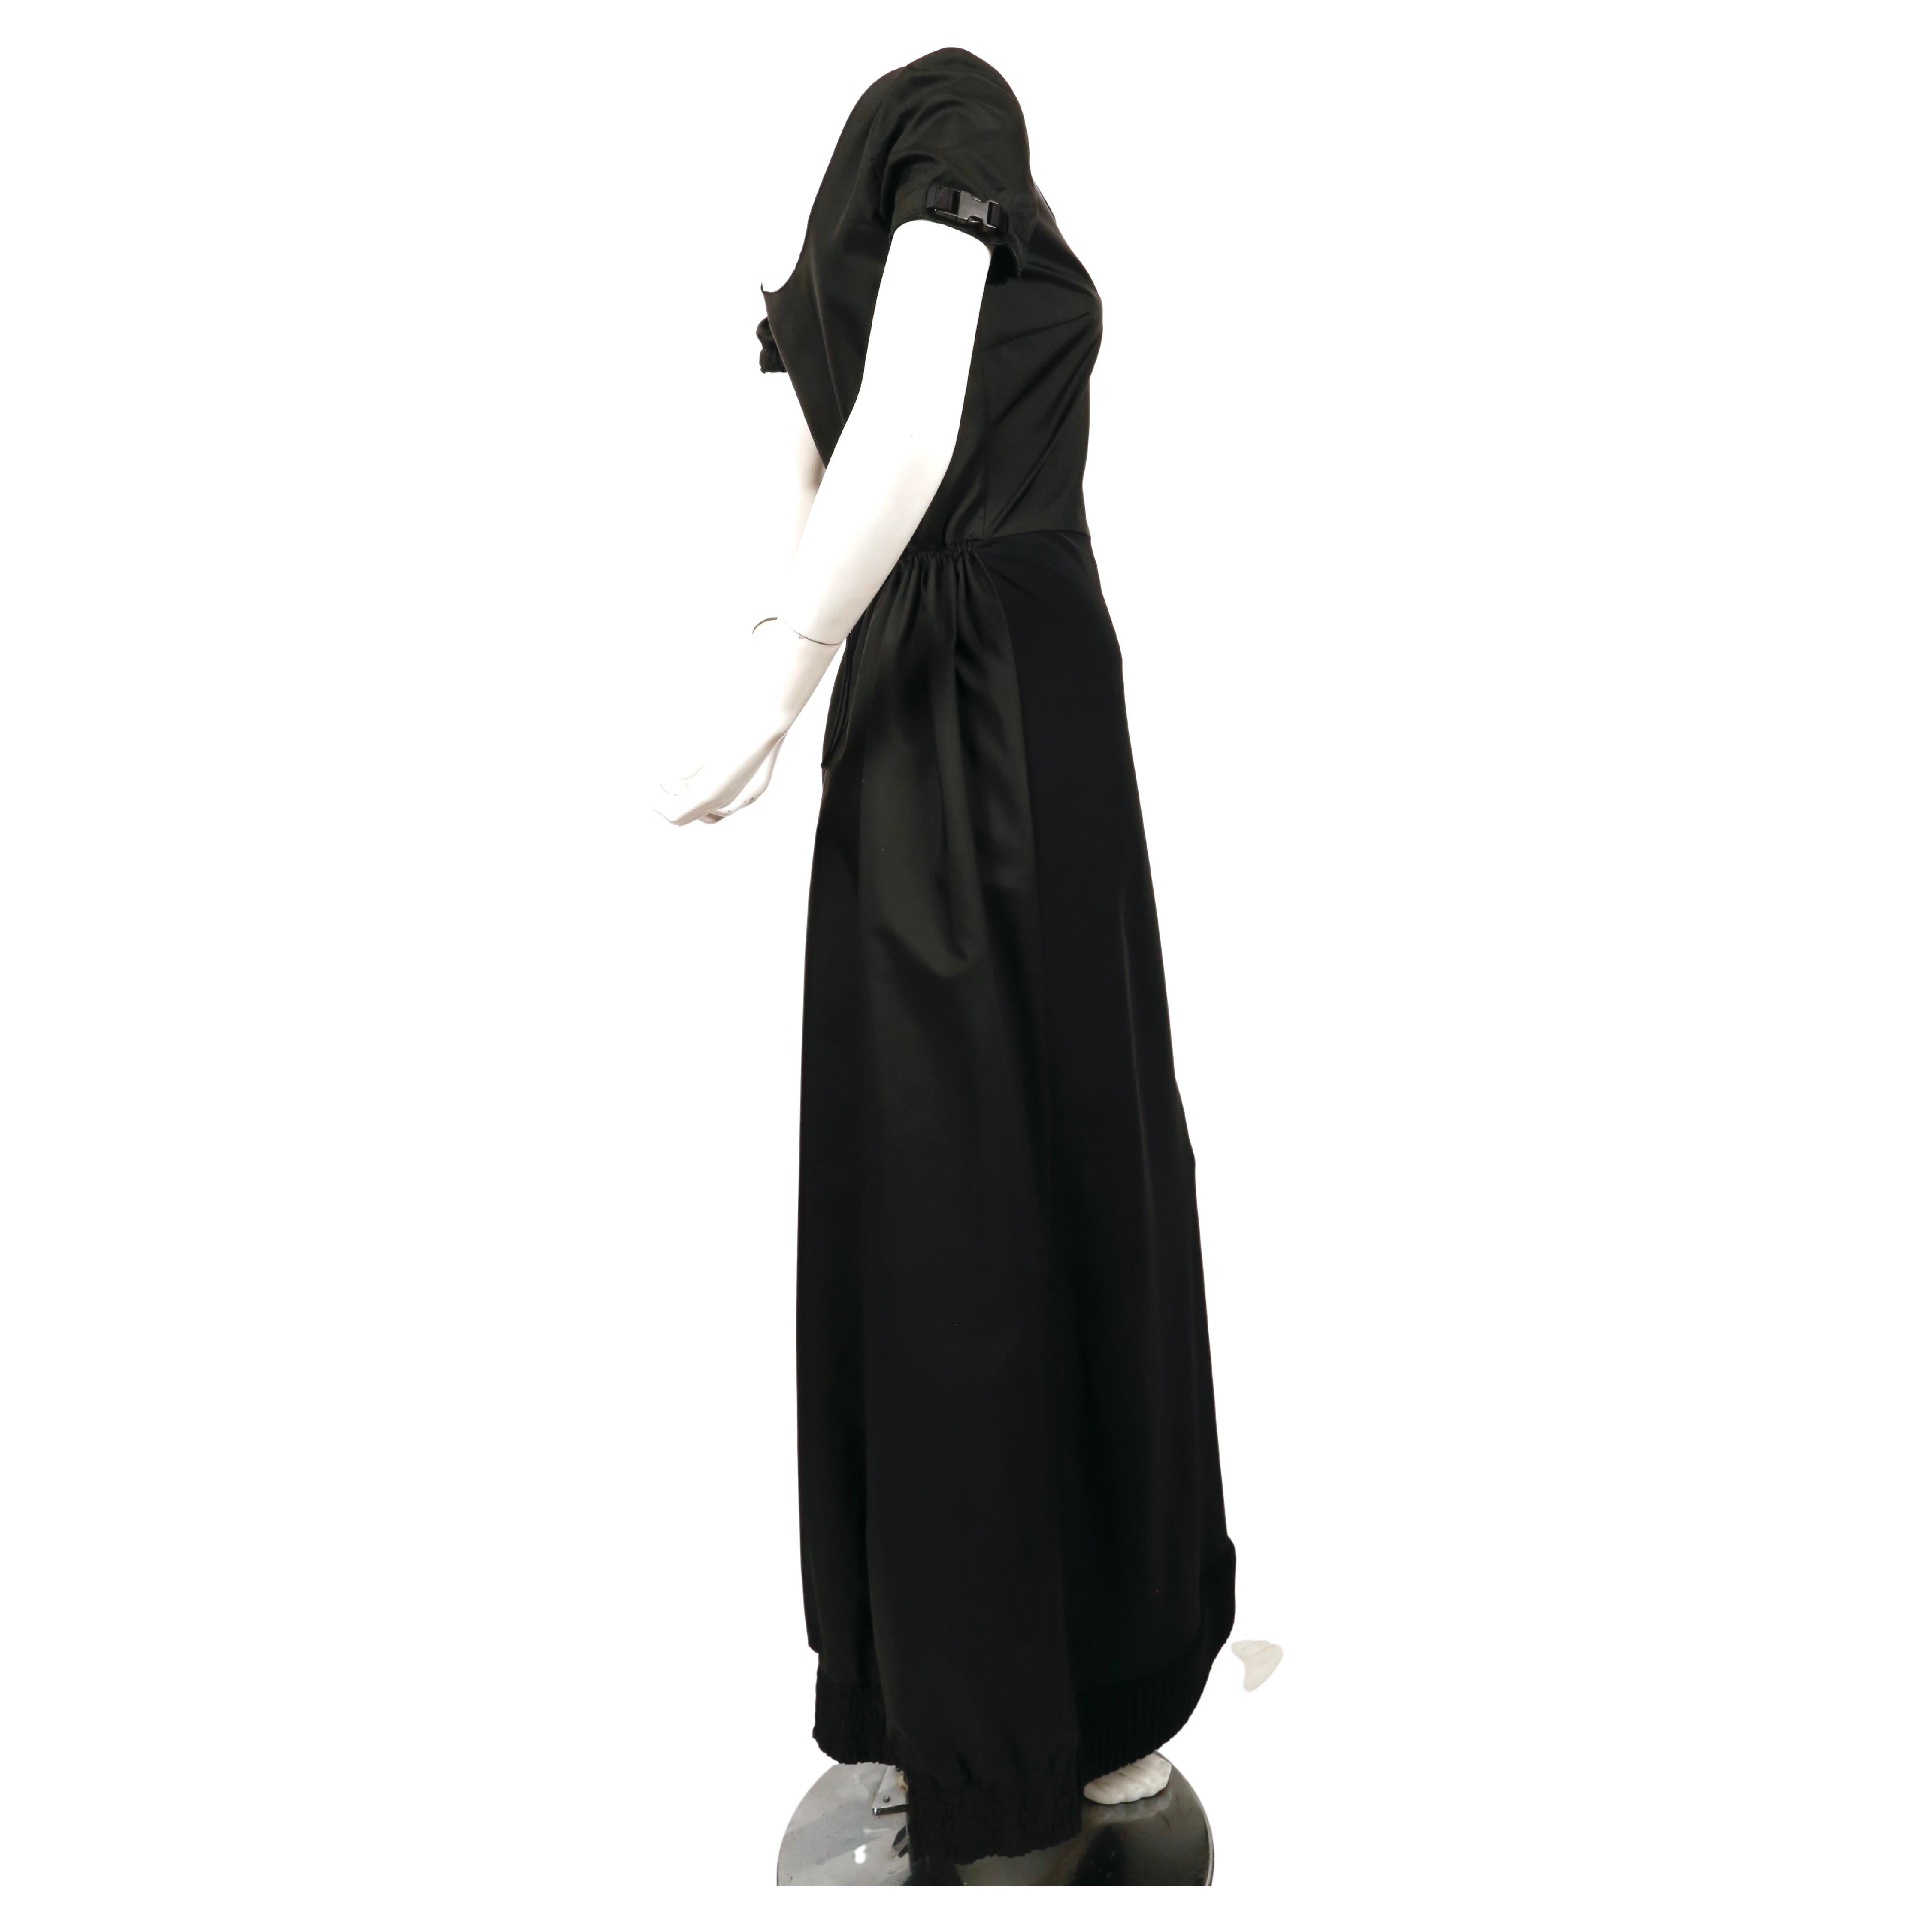 Robe en nylon et scuba noir de jais avec ourlet en tricot côtelé, détails de boucles aux manches et taille cintrée, conçue par Miuccia Prada, exactement comme vue sur le défilé MIU MIU de l'automne 1999. Labellisé en taille 42, il est cependant plus